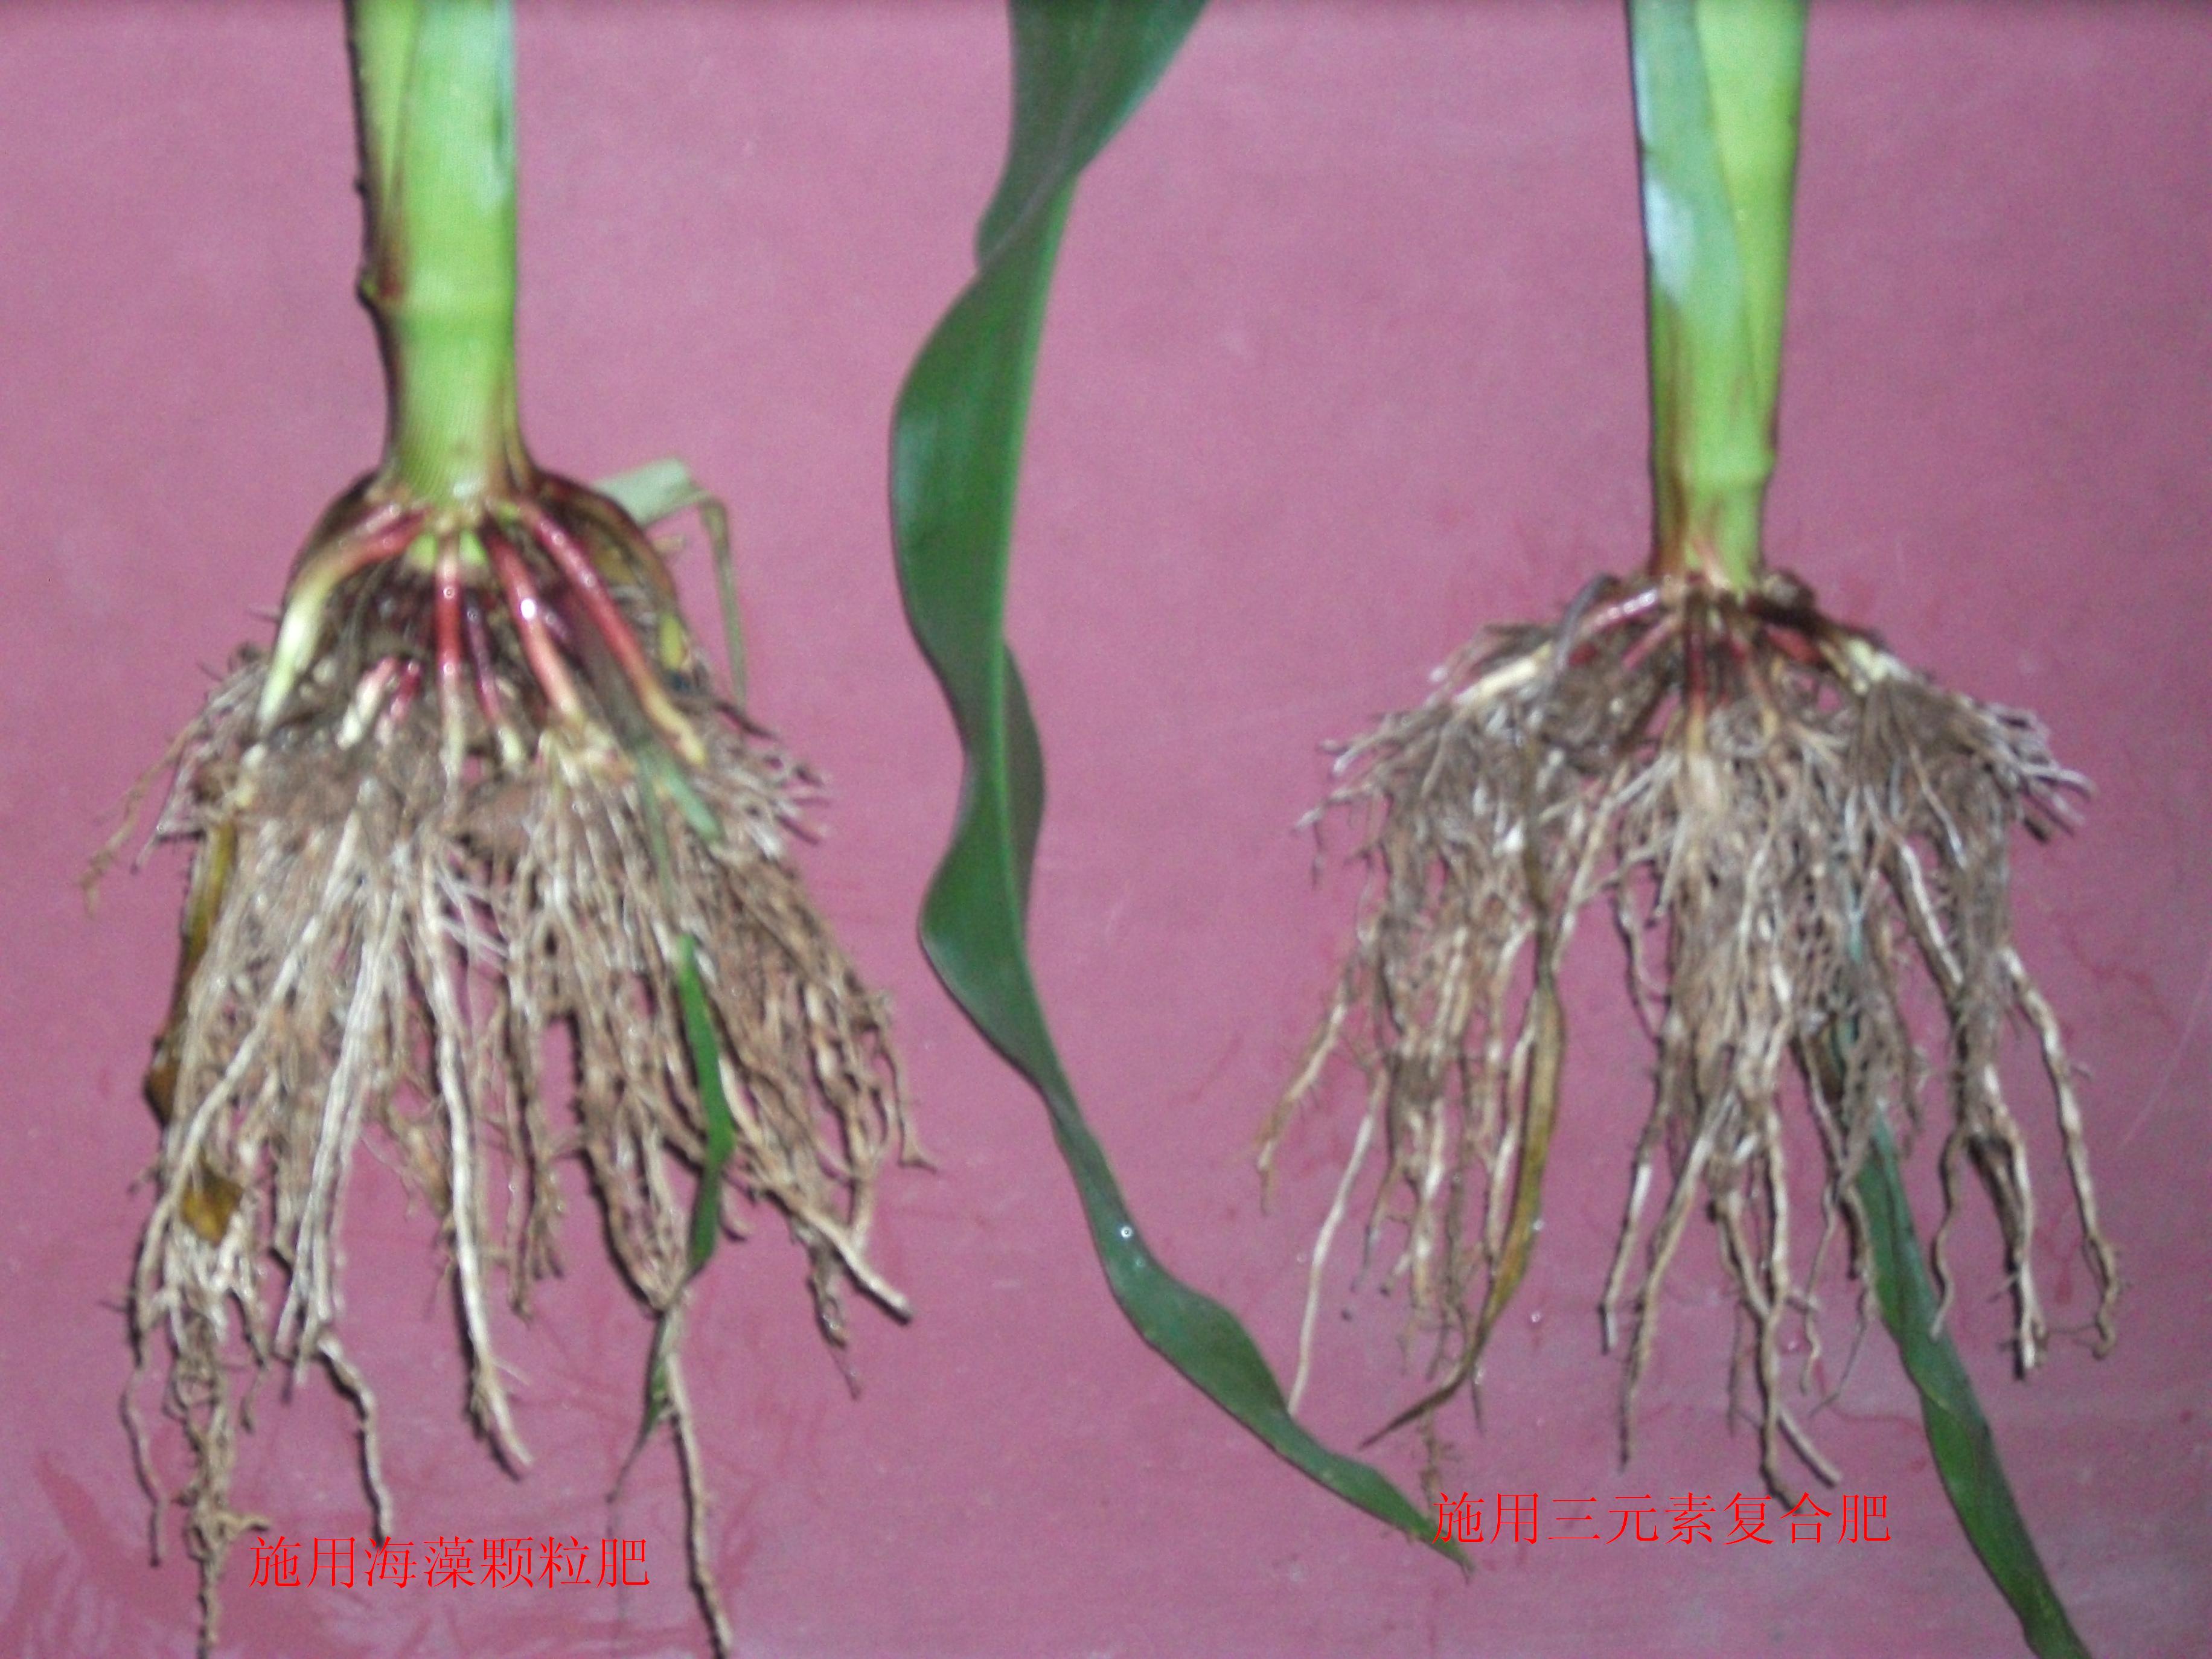 明月海藻肥在河北邯郸成安玉米上使用后,根系对比图